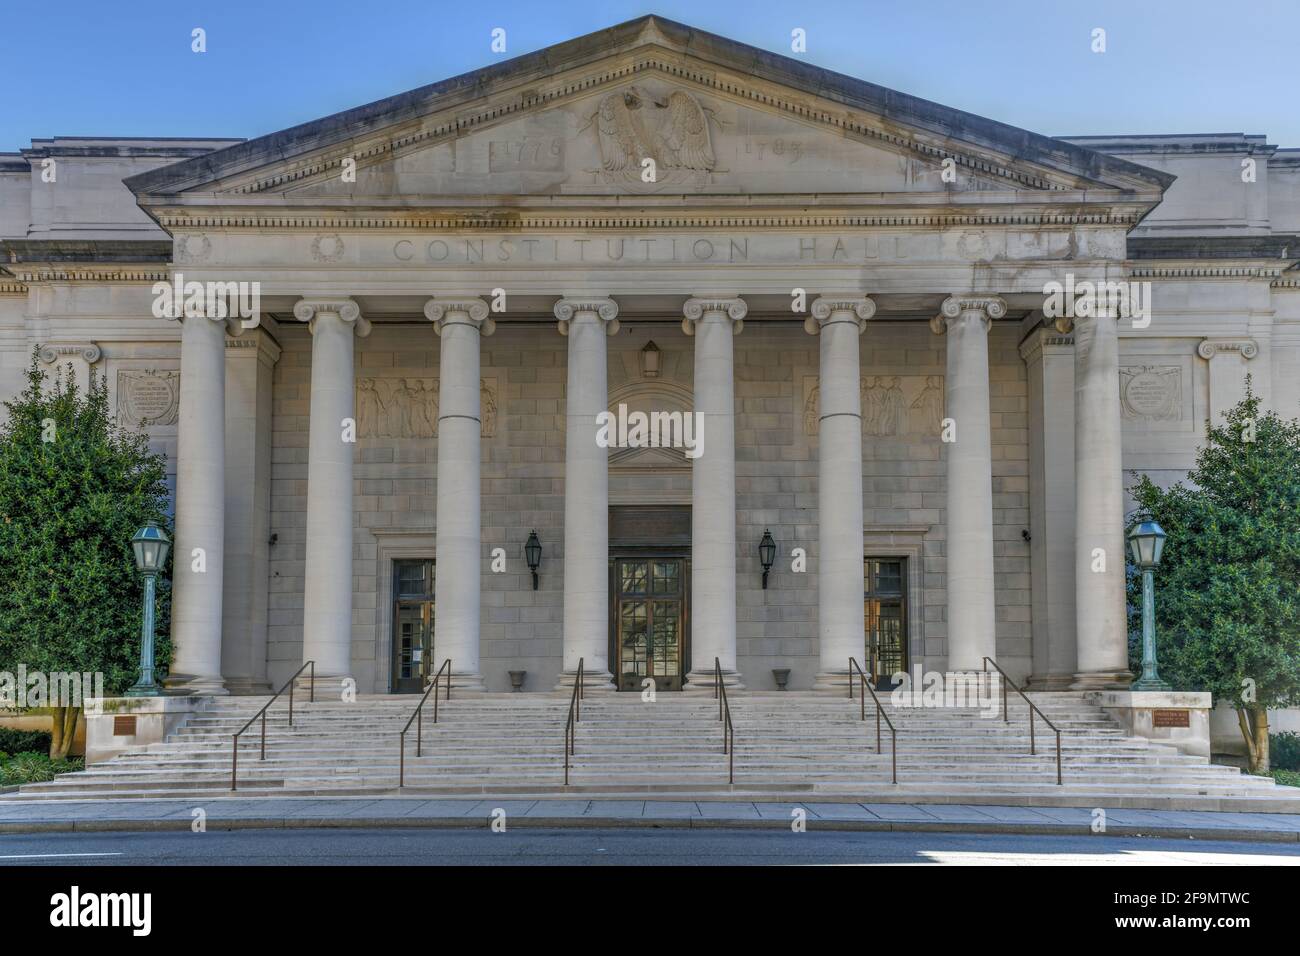 Washington, DC - 3 avril 2021 : le Daughters of the American Revolution Constitution Hall, un hall de discussion situé près de la Maison Blanche à Washington, D.C. Banque D'Images